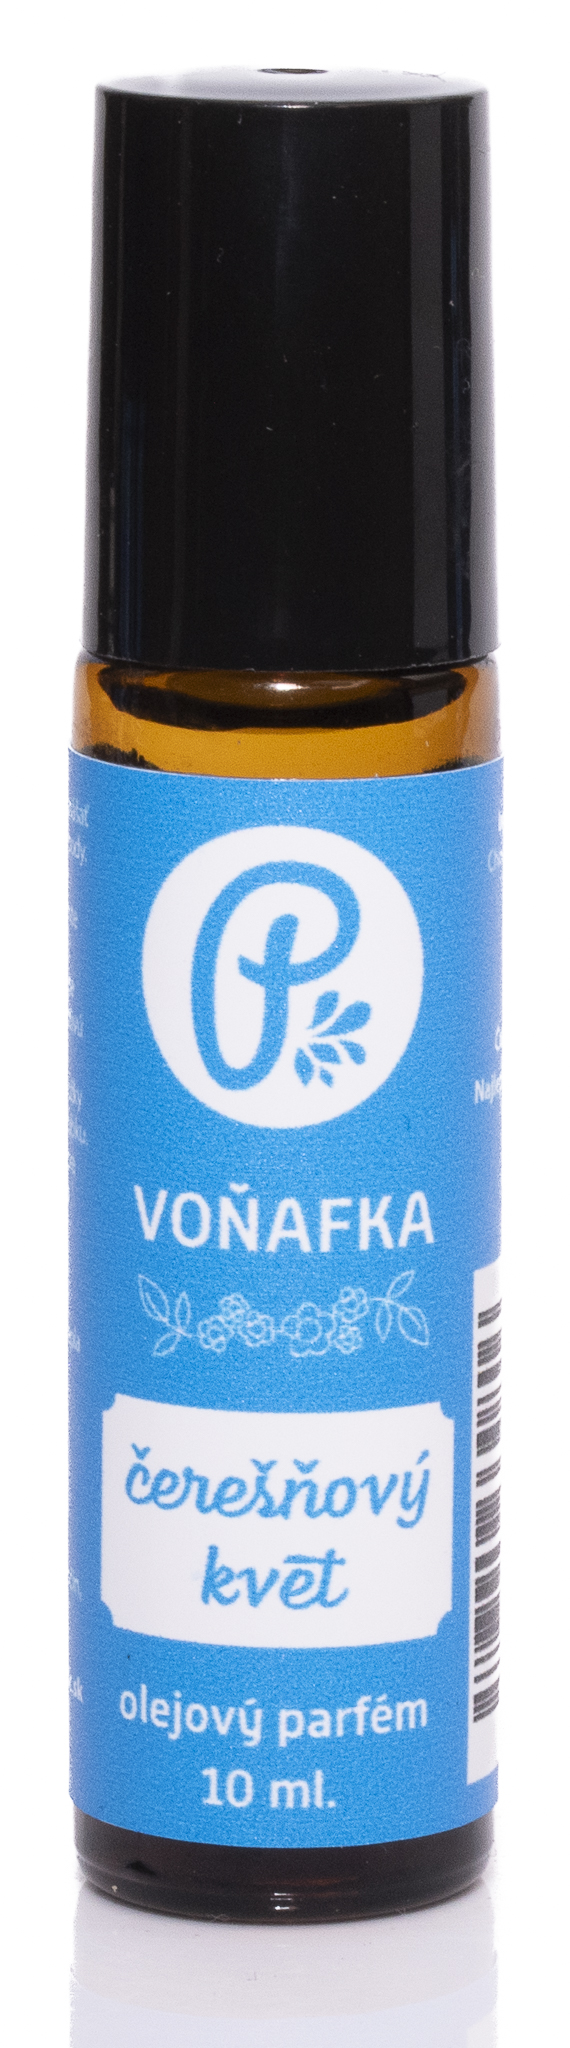 PANAKEIA Voňafka - Čerešňový kvet 10ml olejový parfém